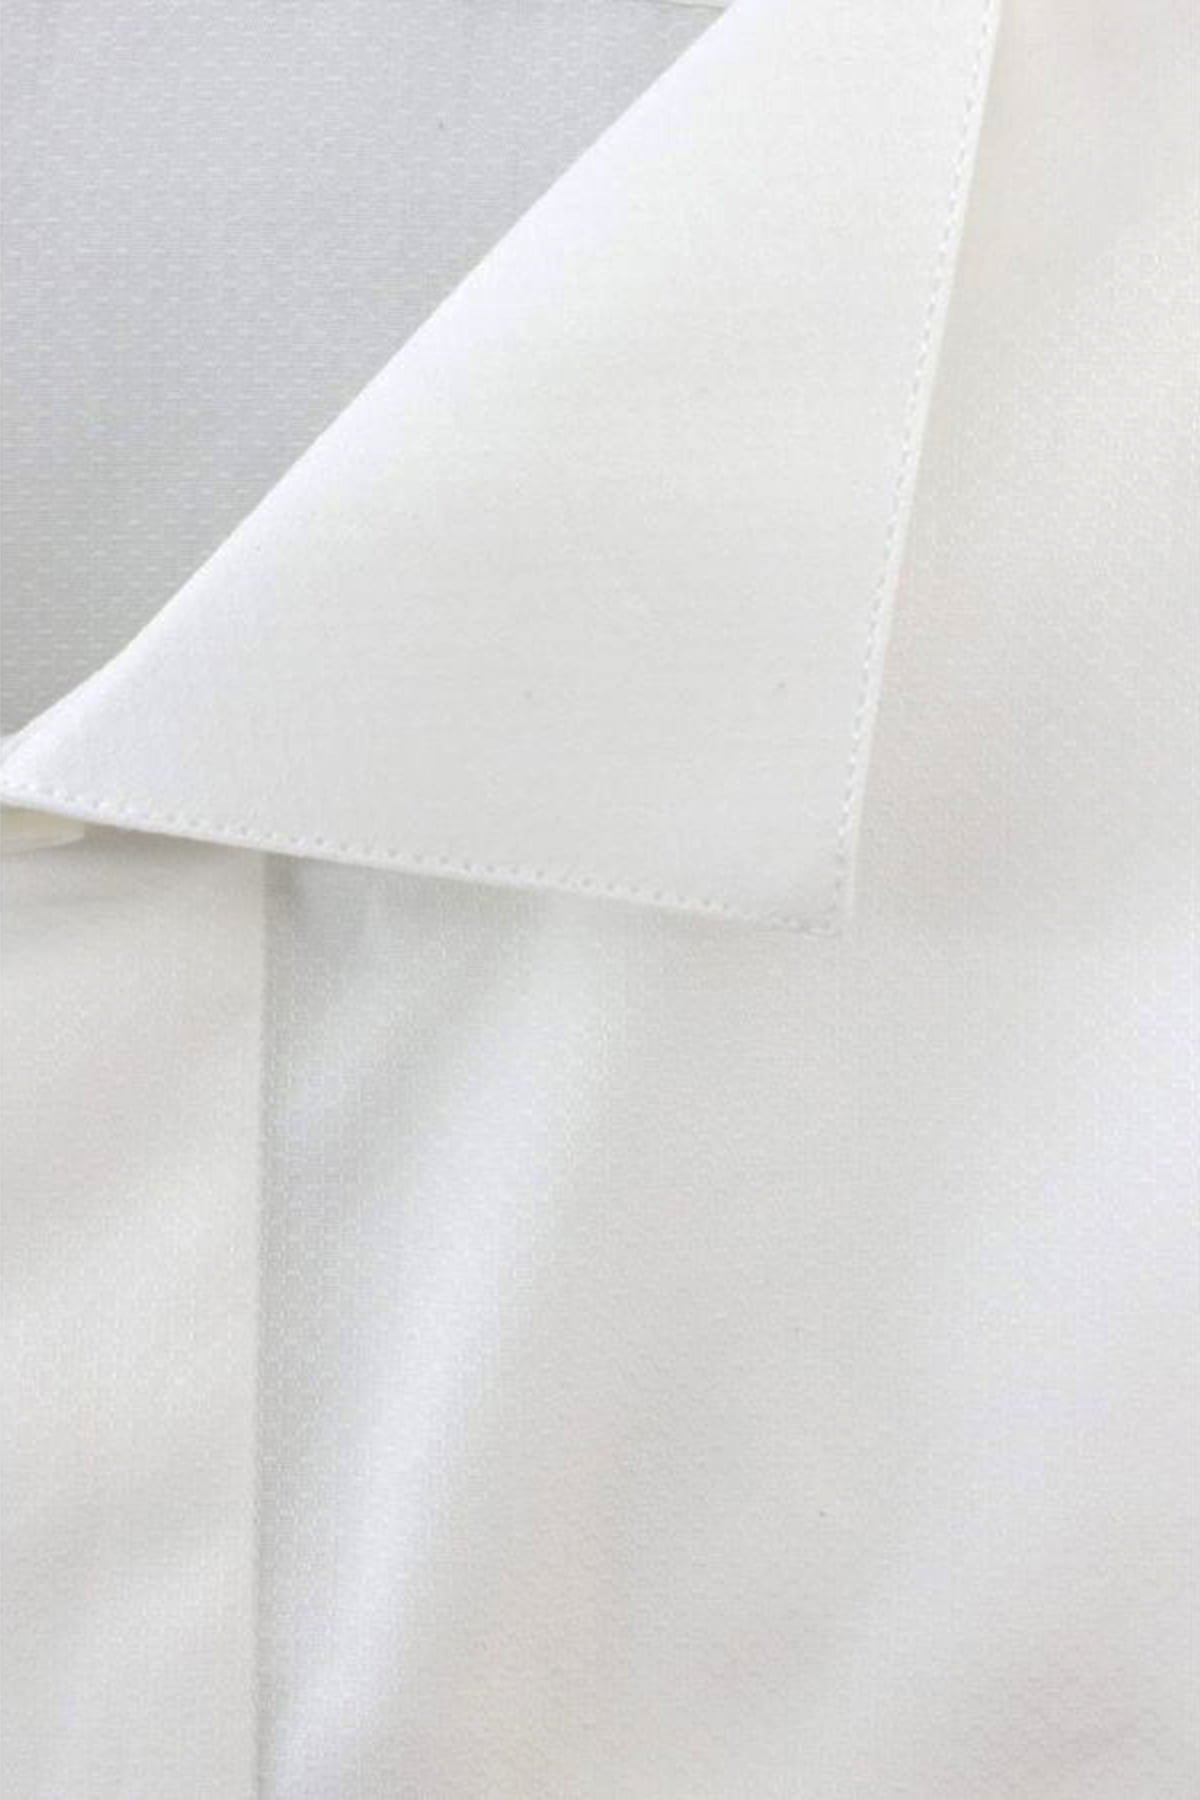 CARILLO CAMICIE Camicia Uomo Regular Collo Diplomatico Cotone Bianco Tinta Unita Effetto Lucido da Cerimonia con Bottoni Bianchi Perlati A Scom 